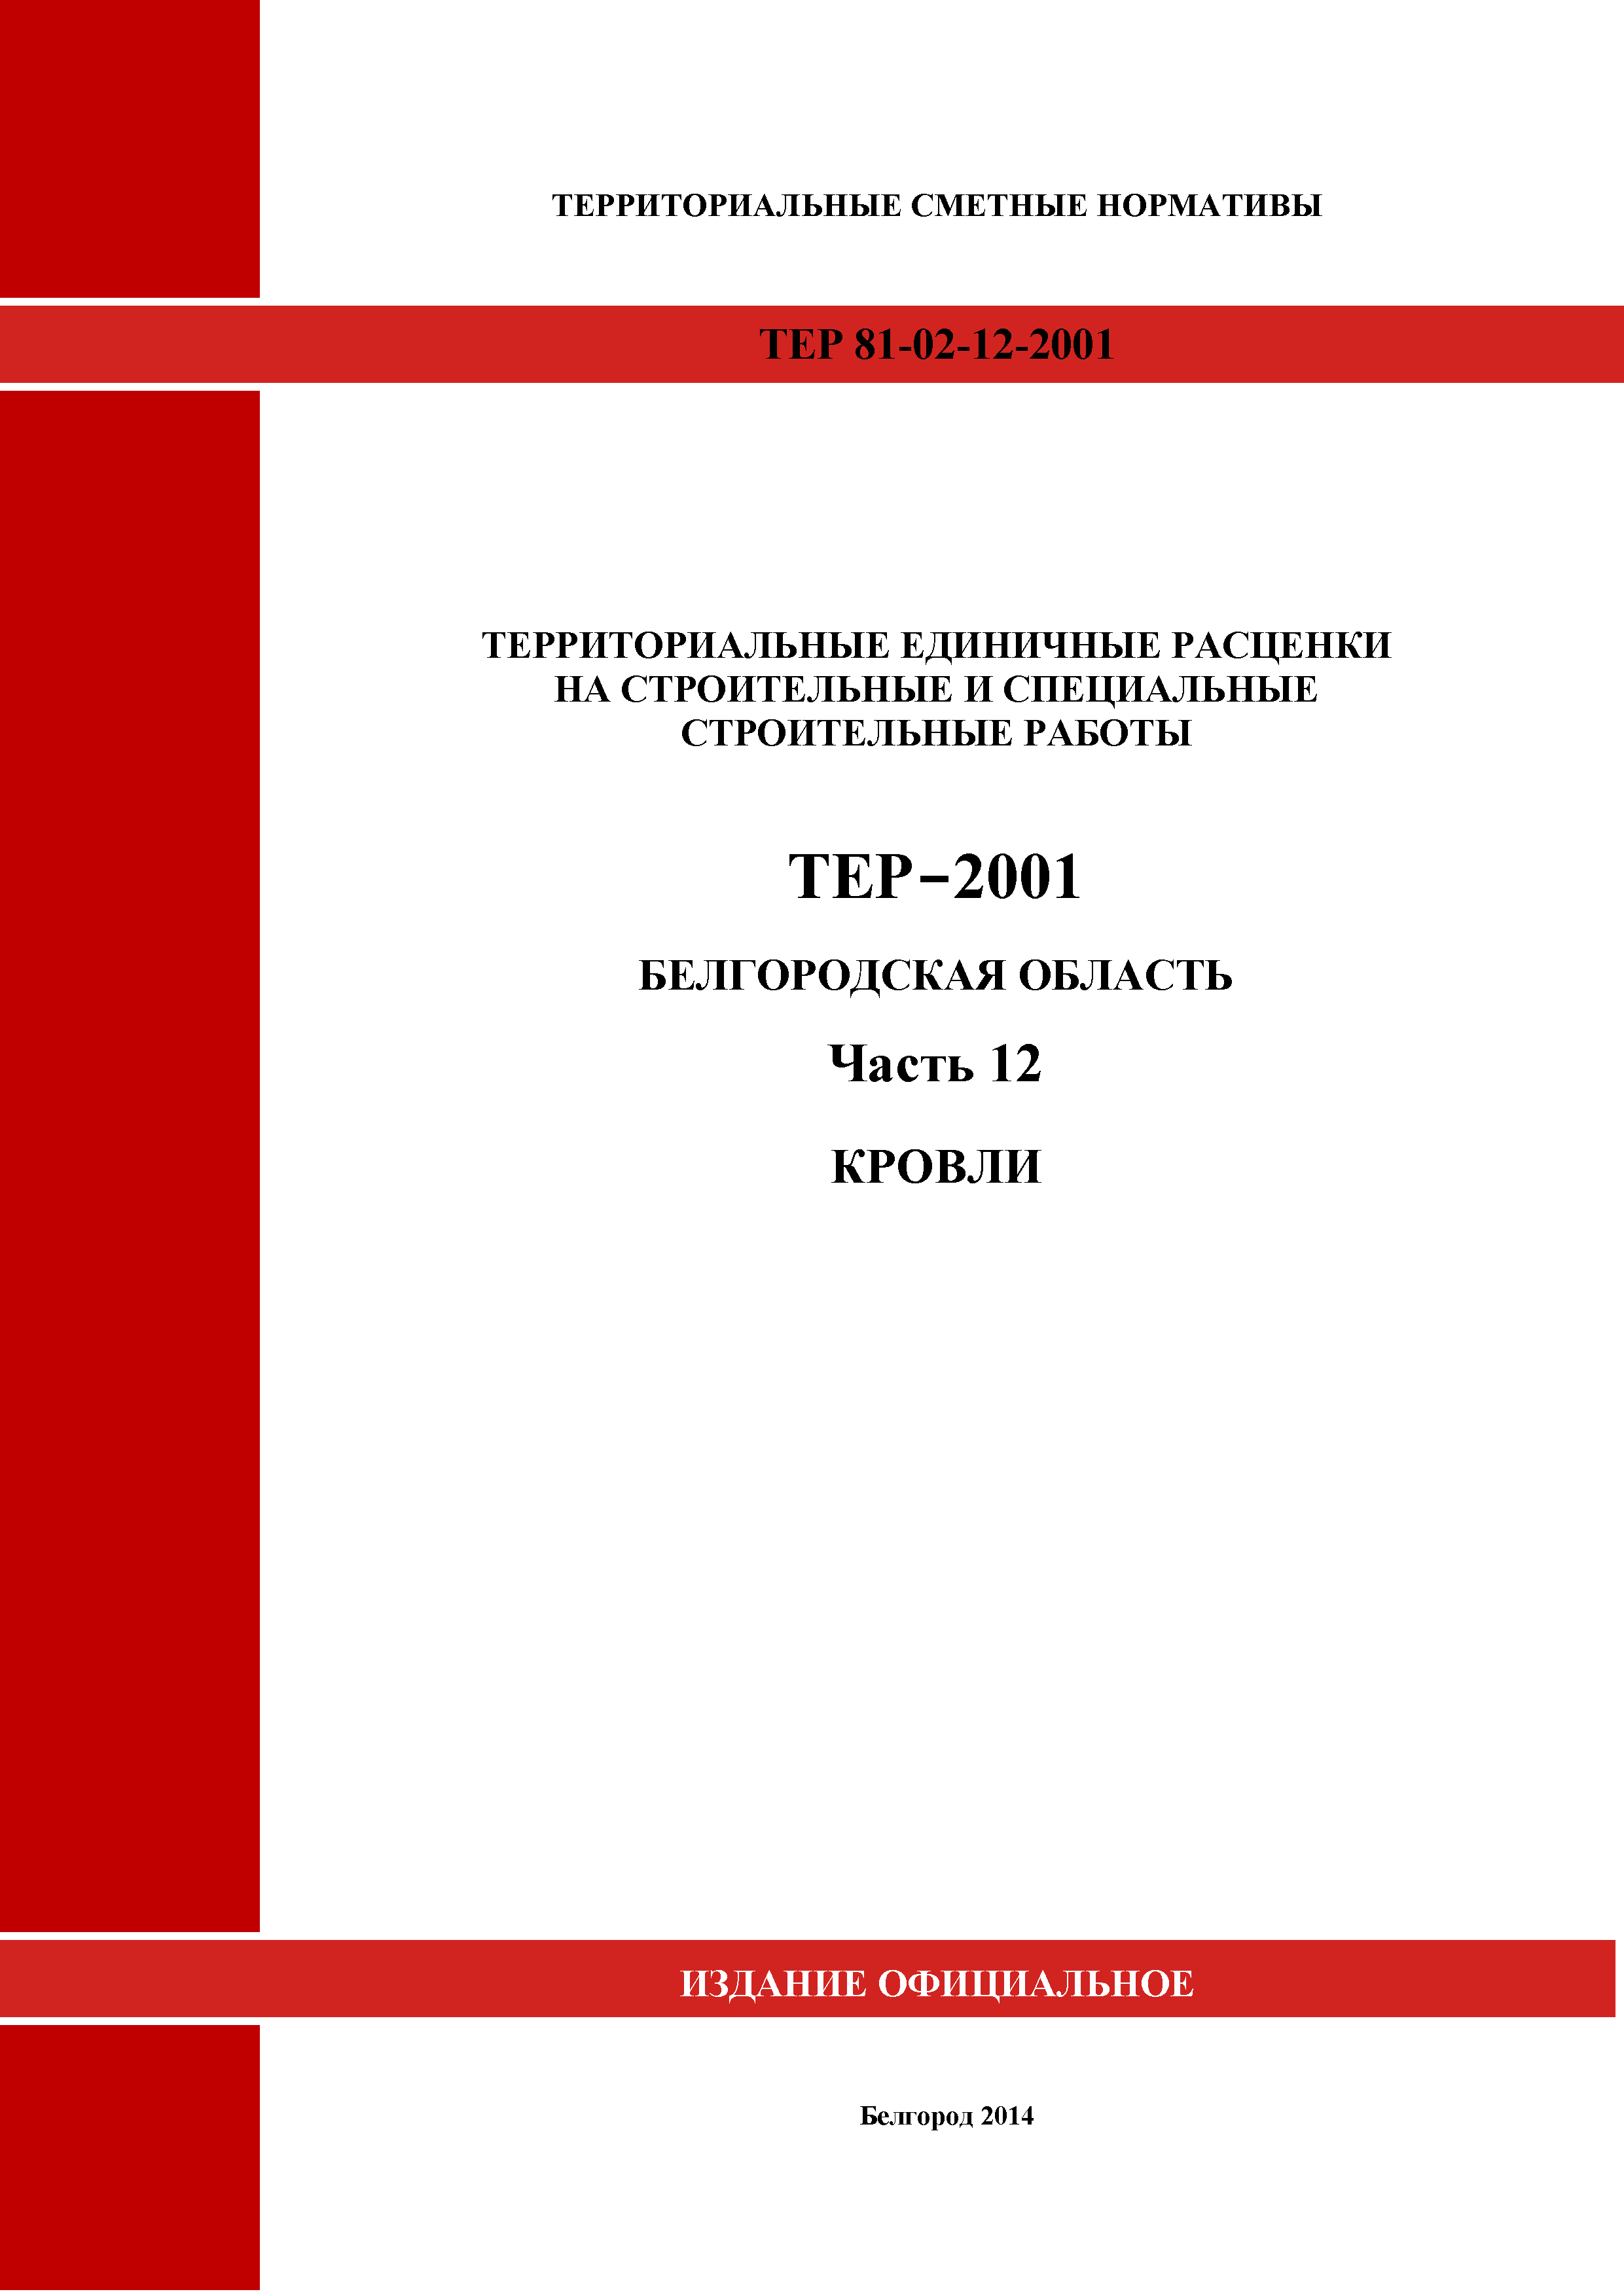 ТЕР Белгородская область 81-02-12-2001